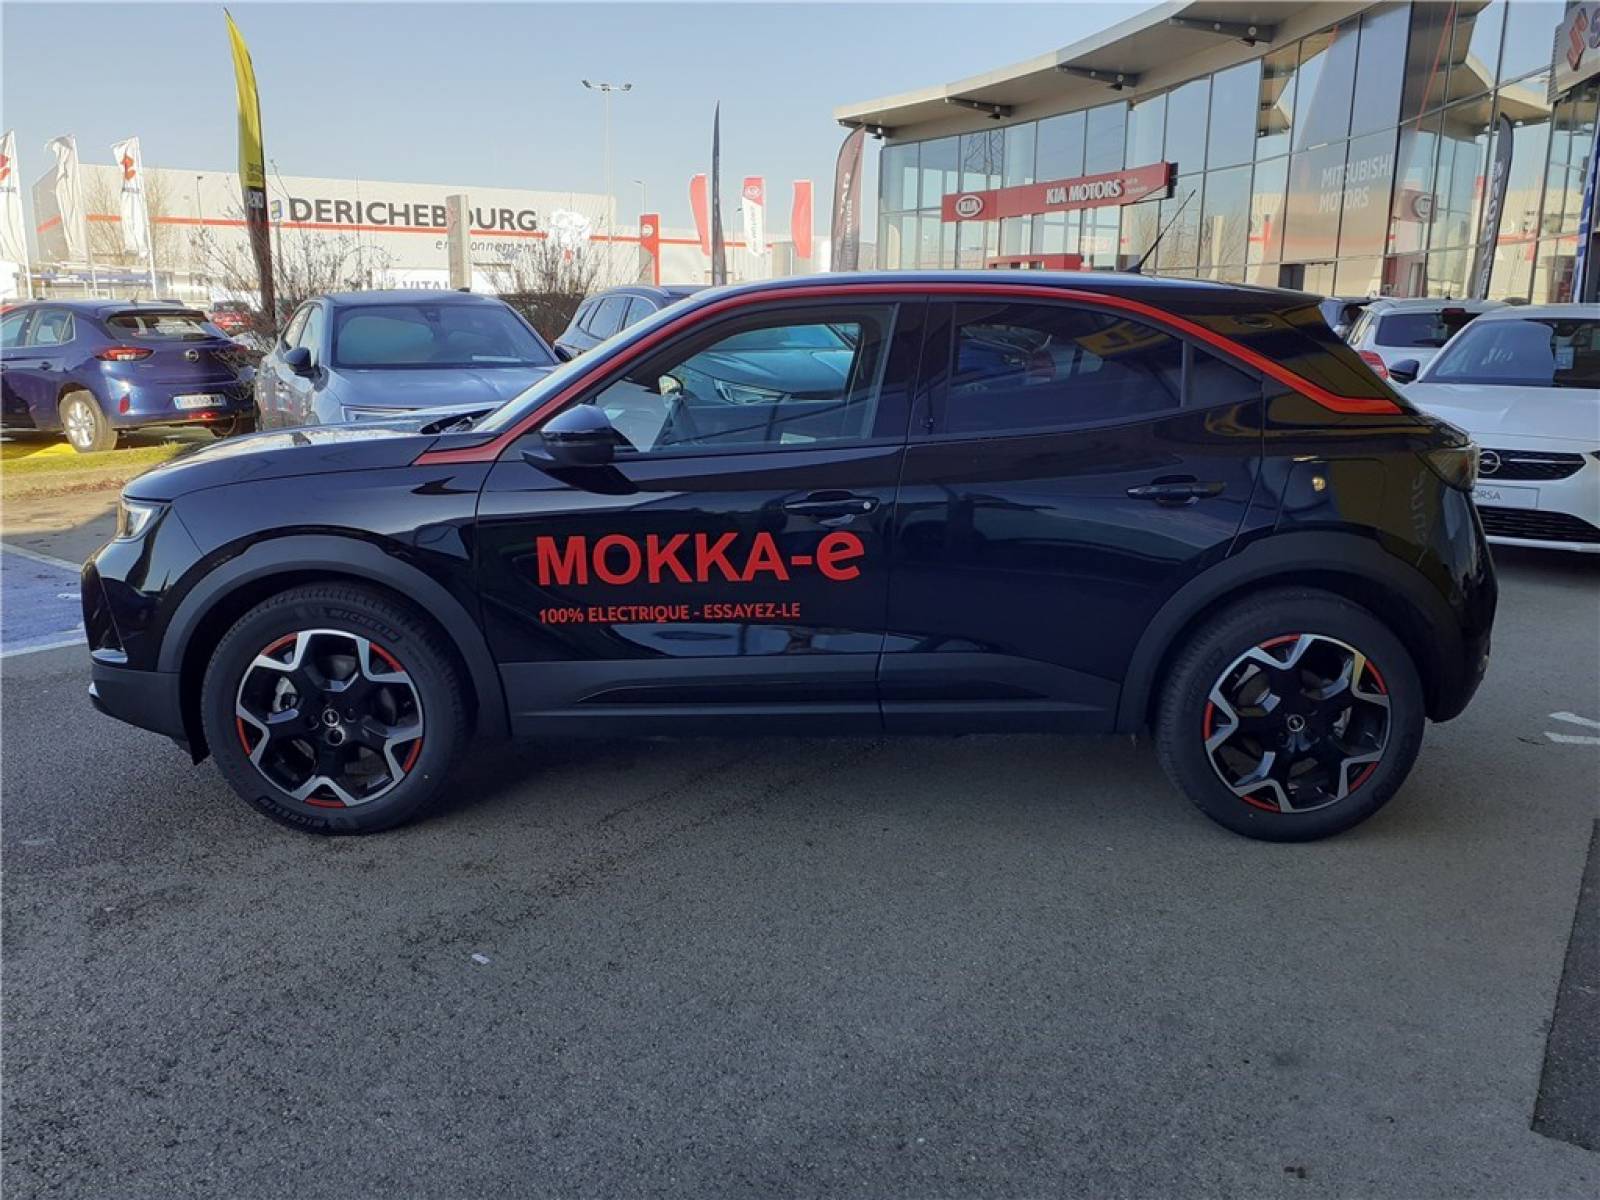 OPEL Mokka Electrique 136 ch & Batterie 50 kw/h - véhicule d'occasion - Groupe Guillet - Opel Magicauto - Montceau-les-Mines - 71300 - Montceau-les-Mines - 2